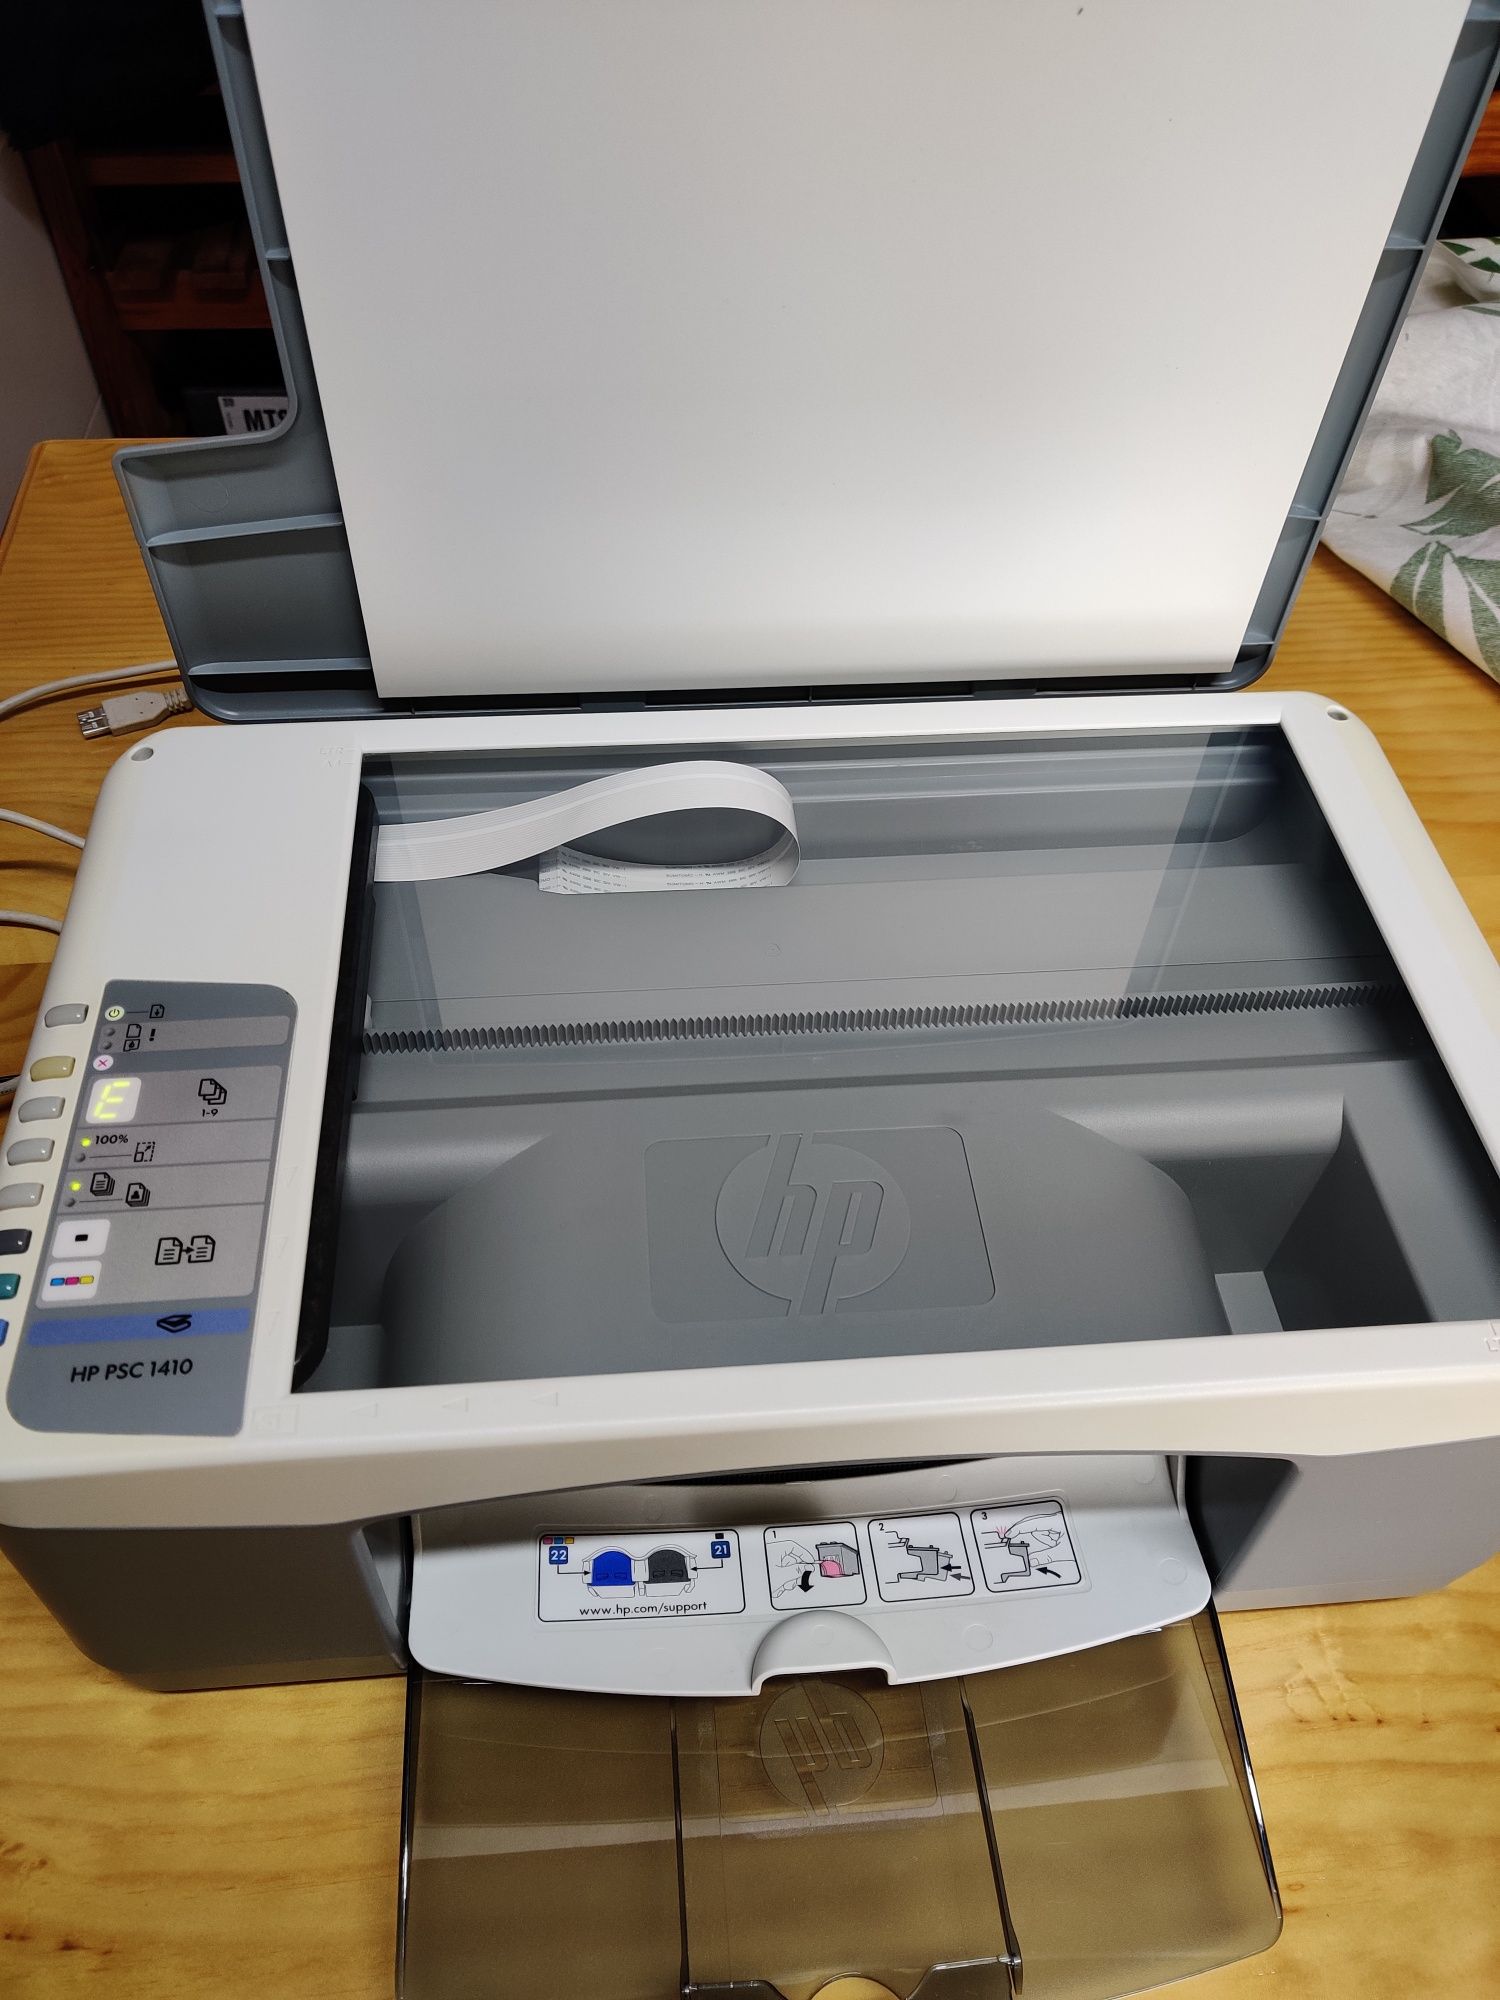 Impressora Multifunções HP PSC 1410 + Tinteiro Cores